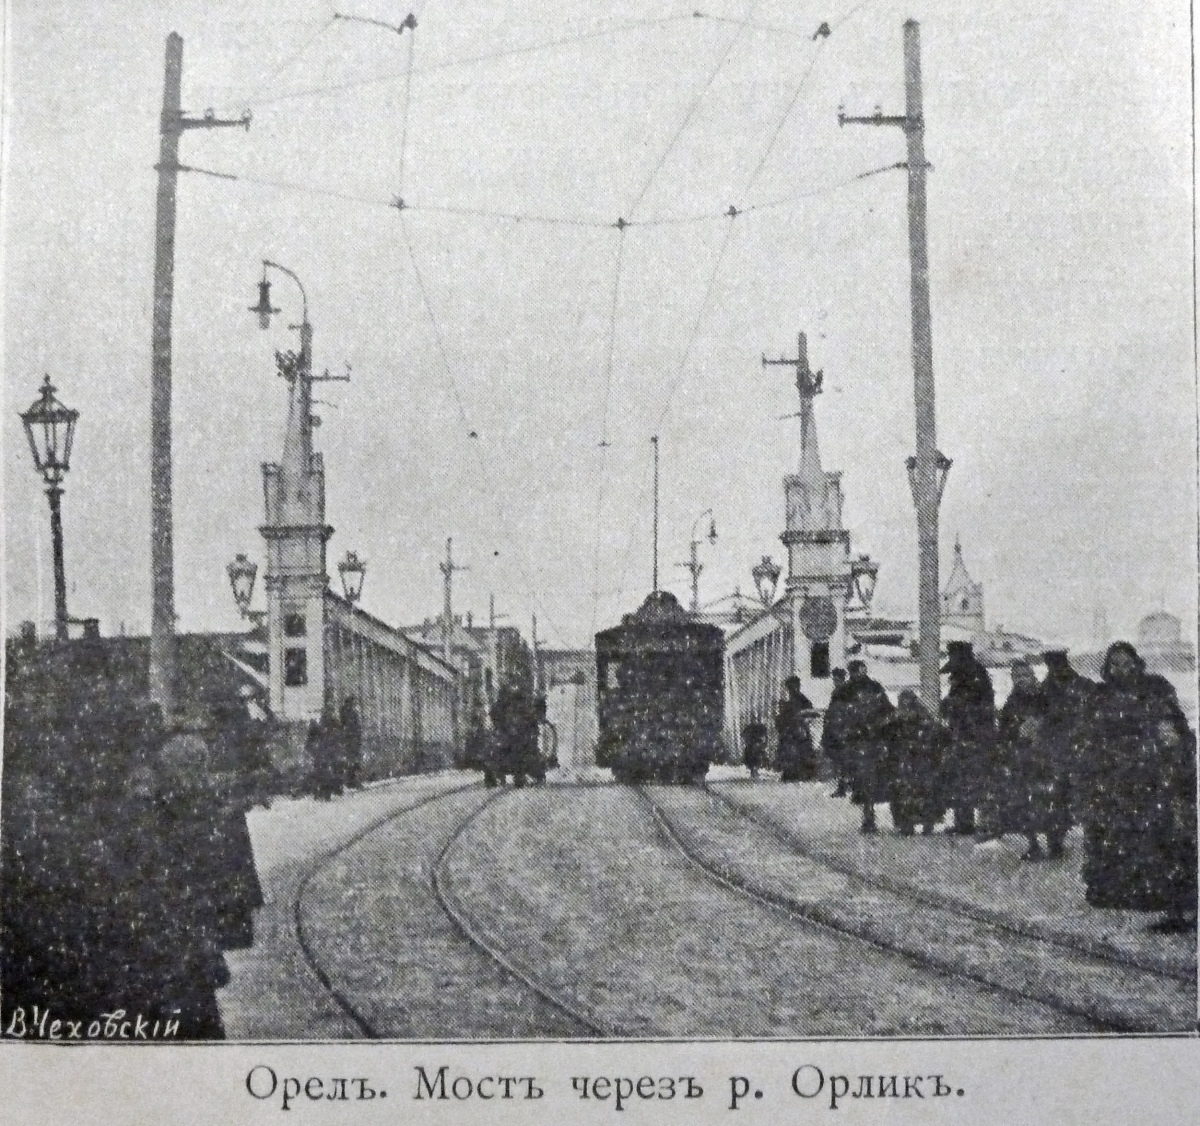 Oriolas — Historical photos [1898-1945]